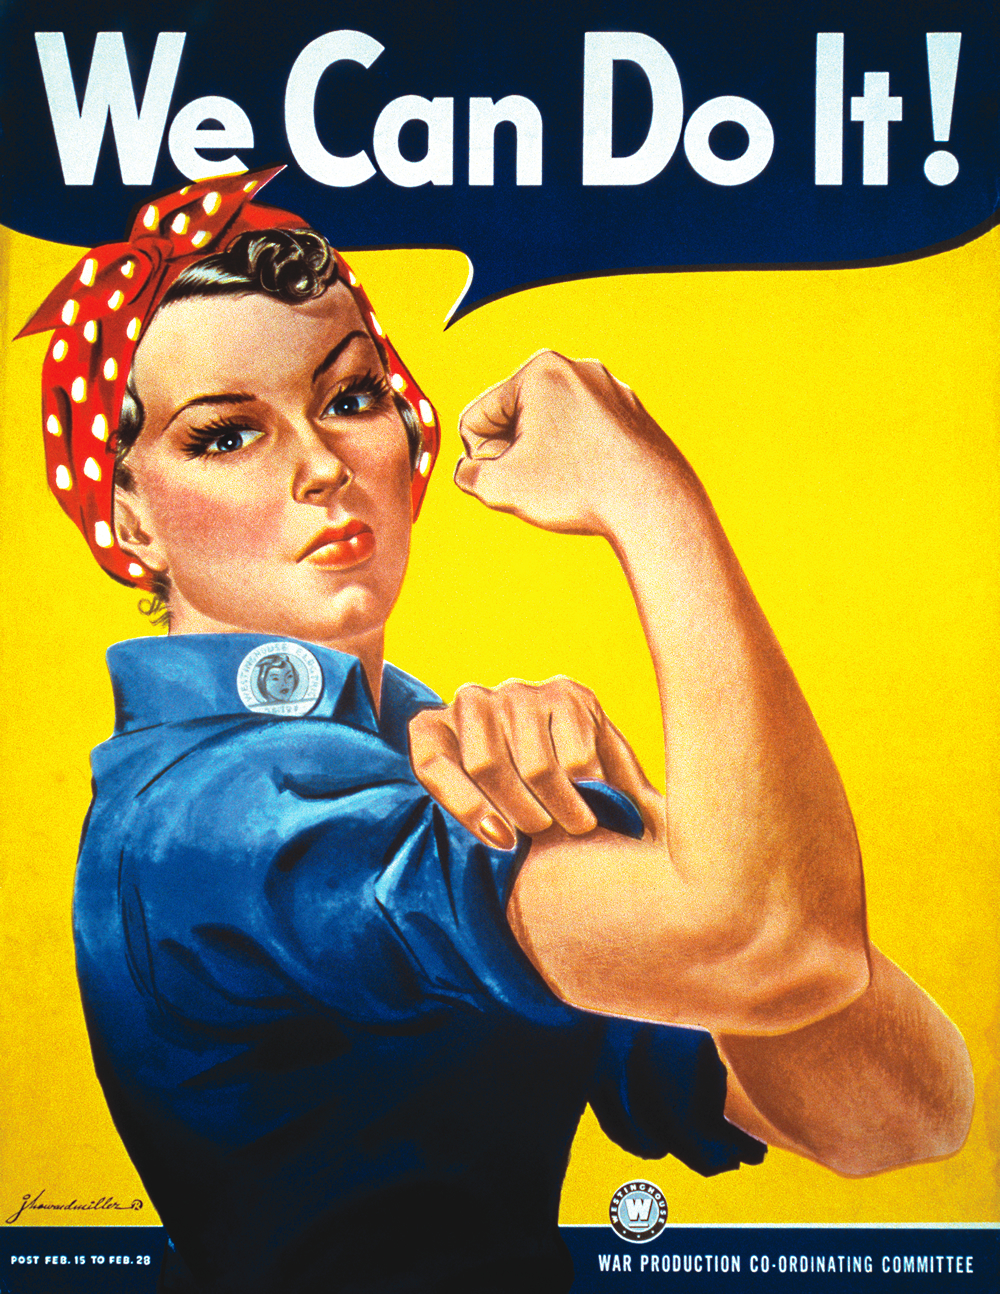 We can do it!, símbolo del feminismo